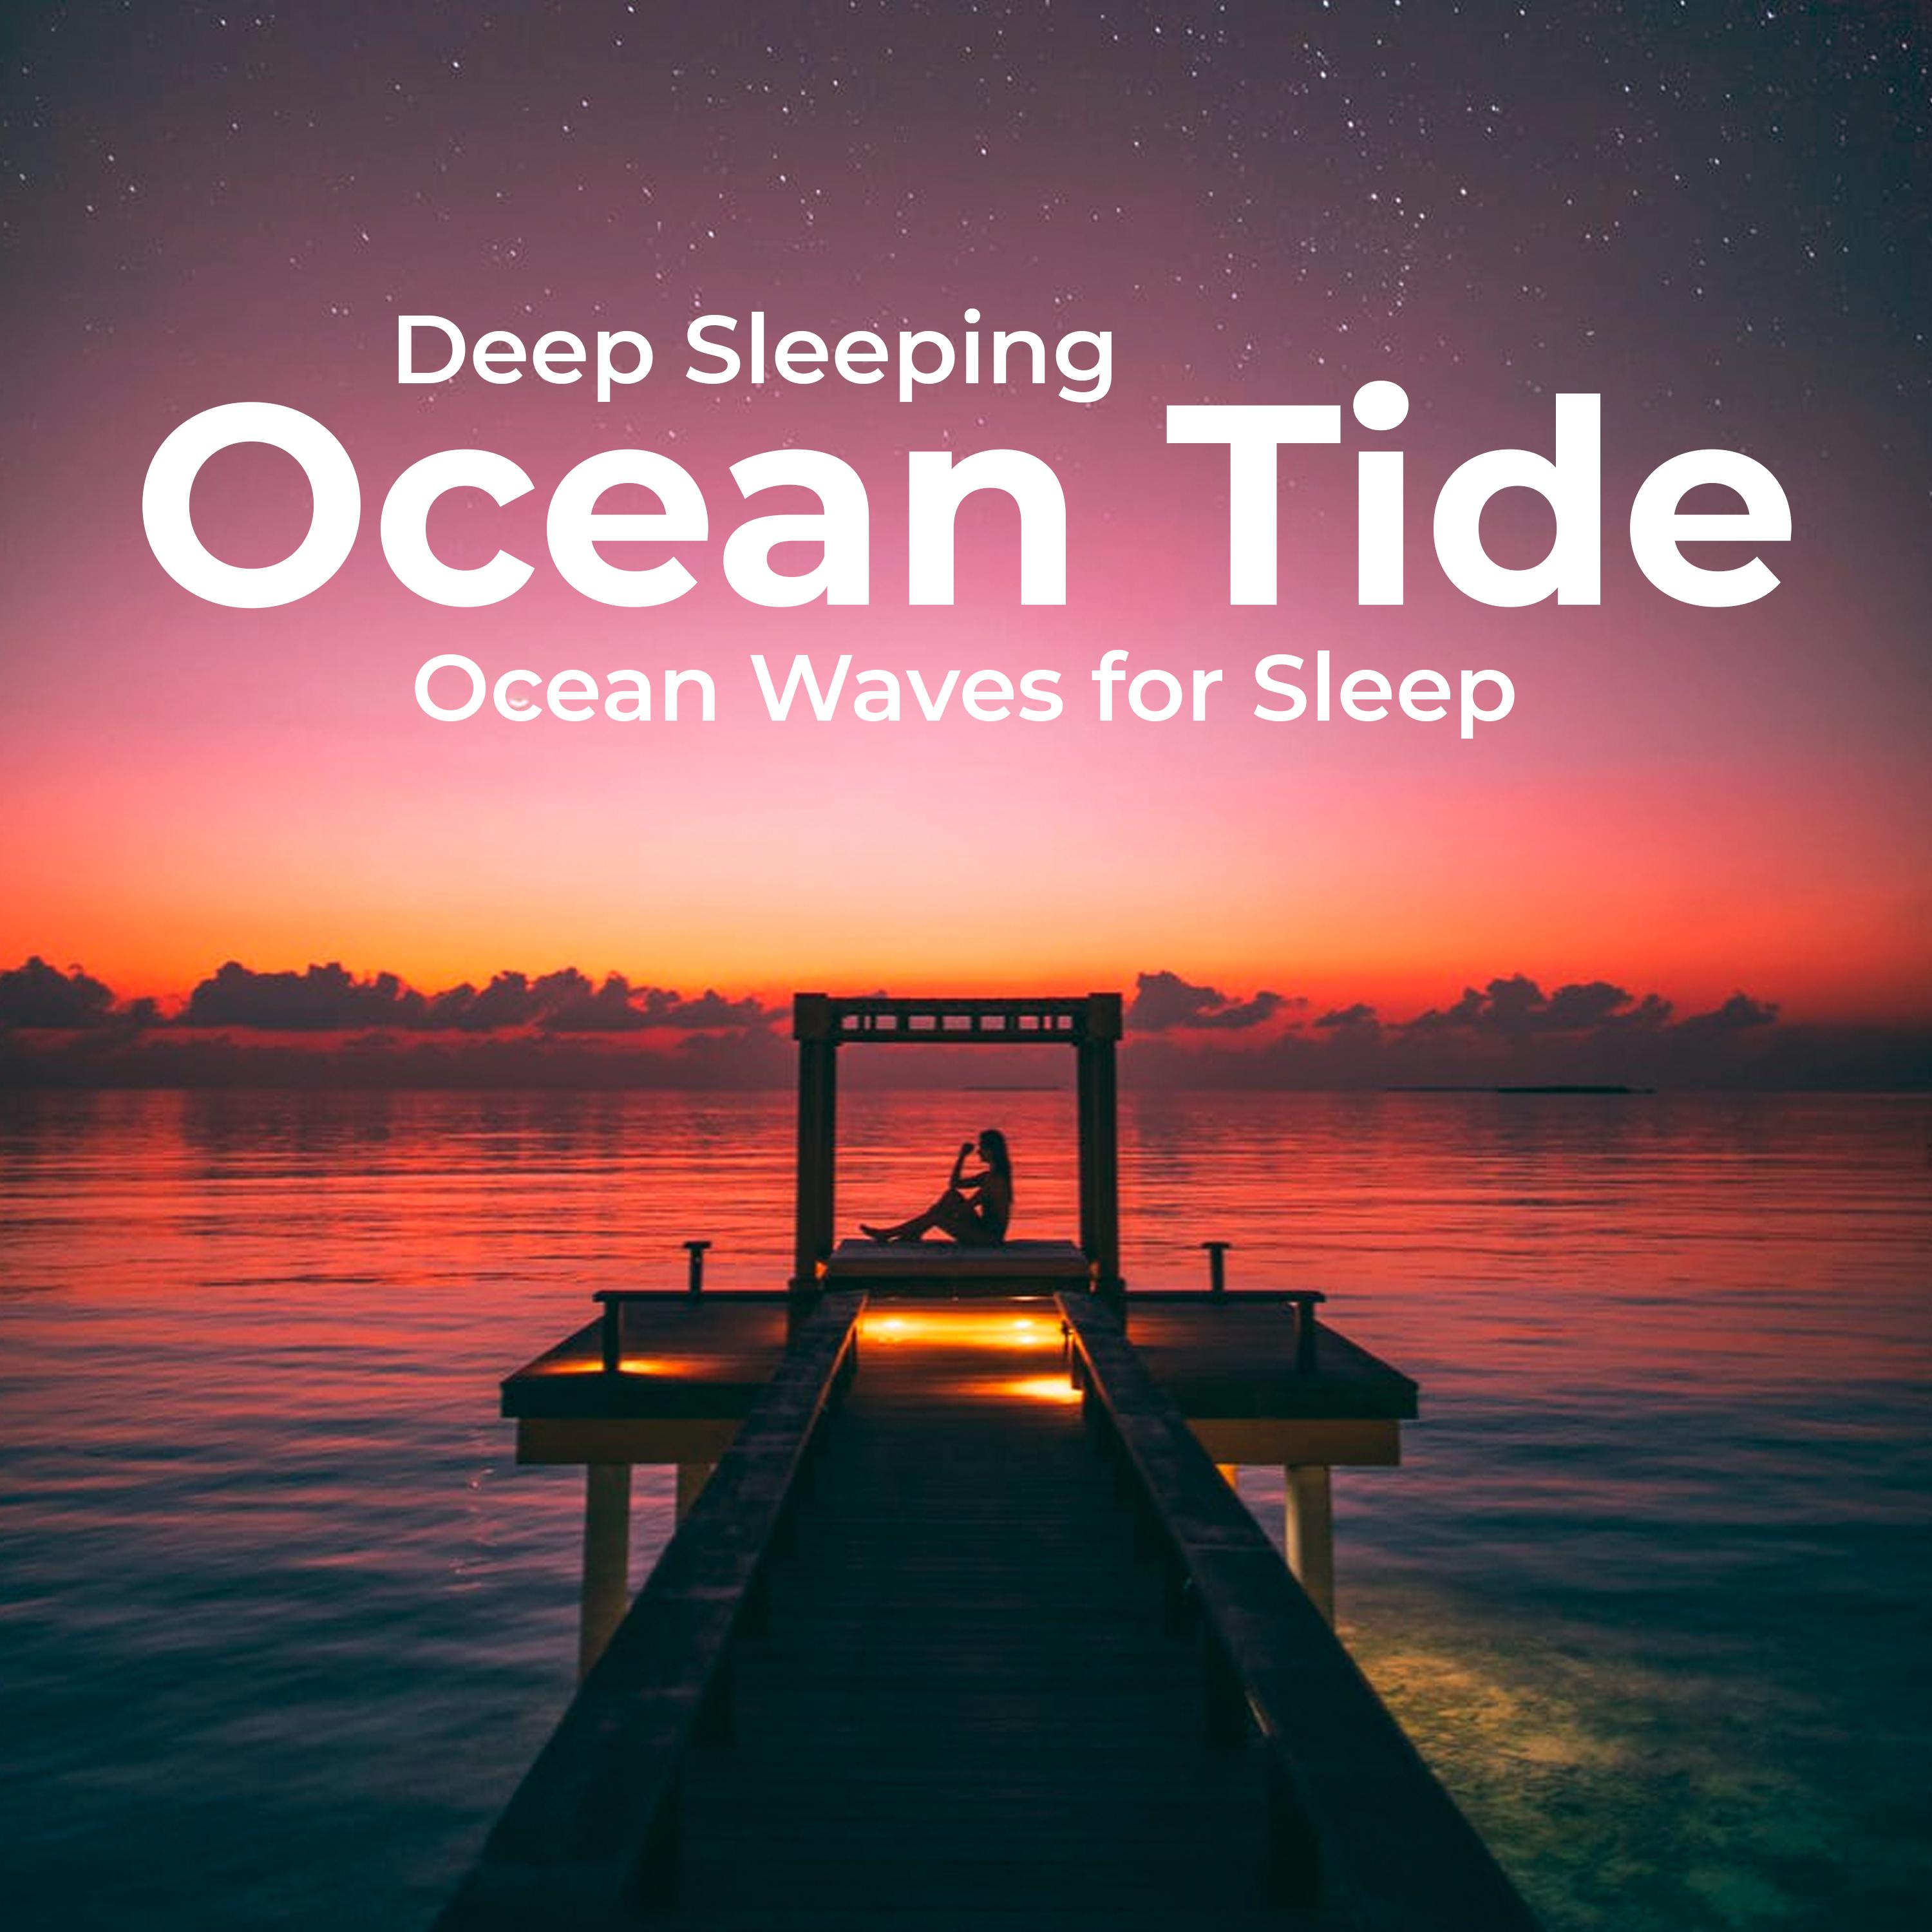 Deep Sleeping Ocean Tide